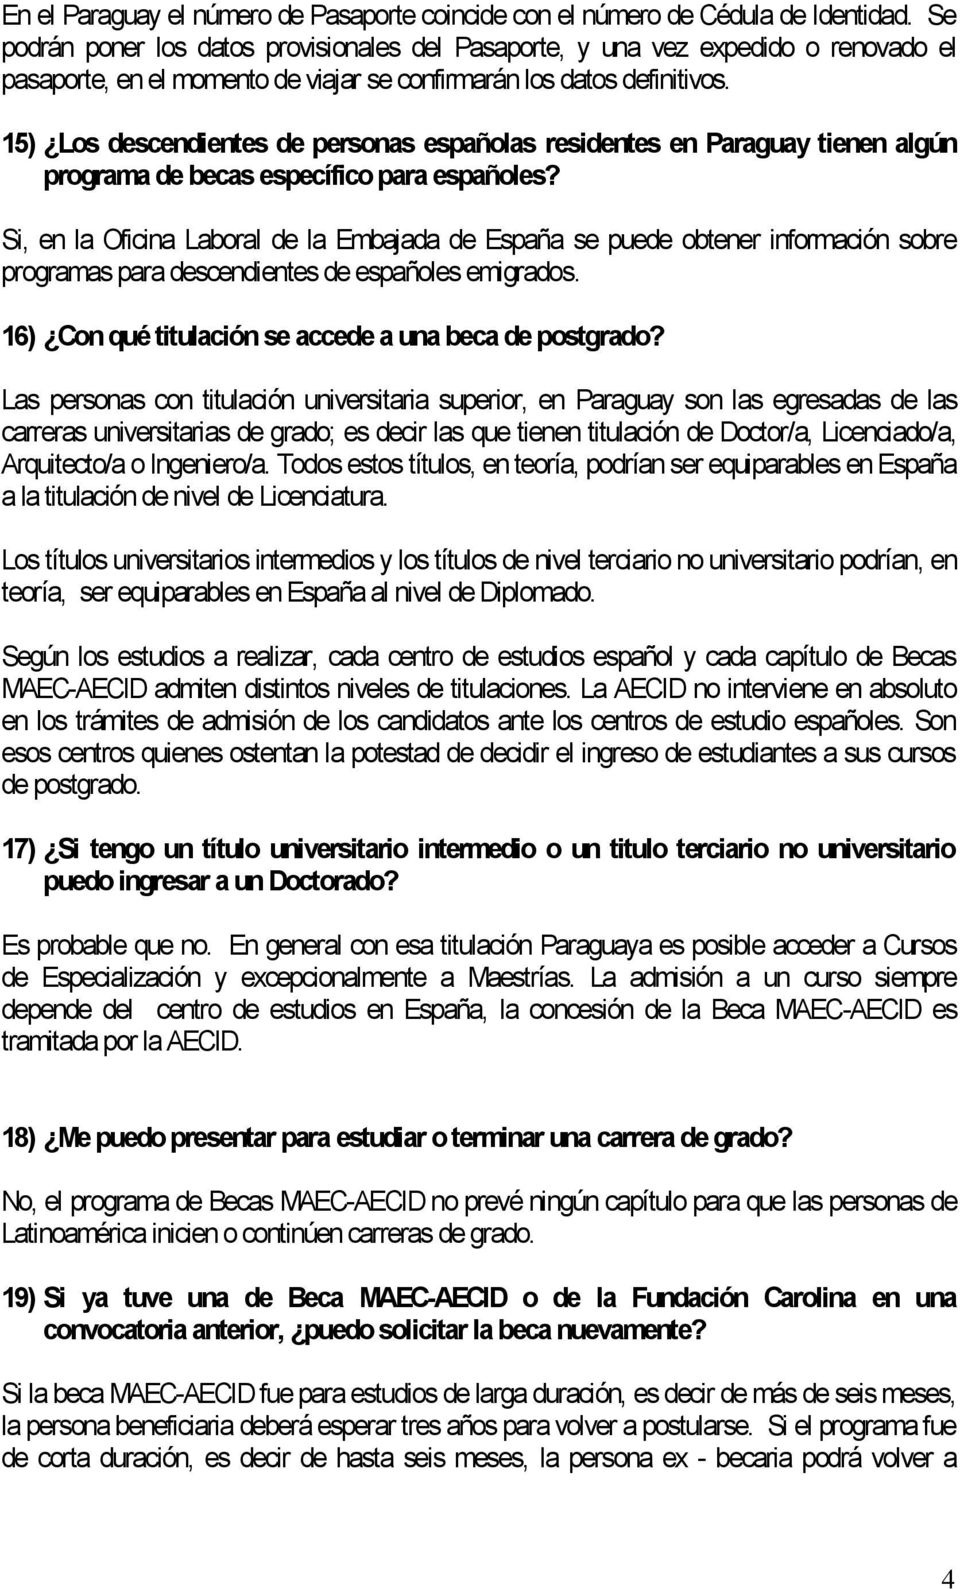 15) Los descendientes de personas españolas residentes en Paraguay tienen algún programa de becas específico para españoles?